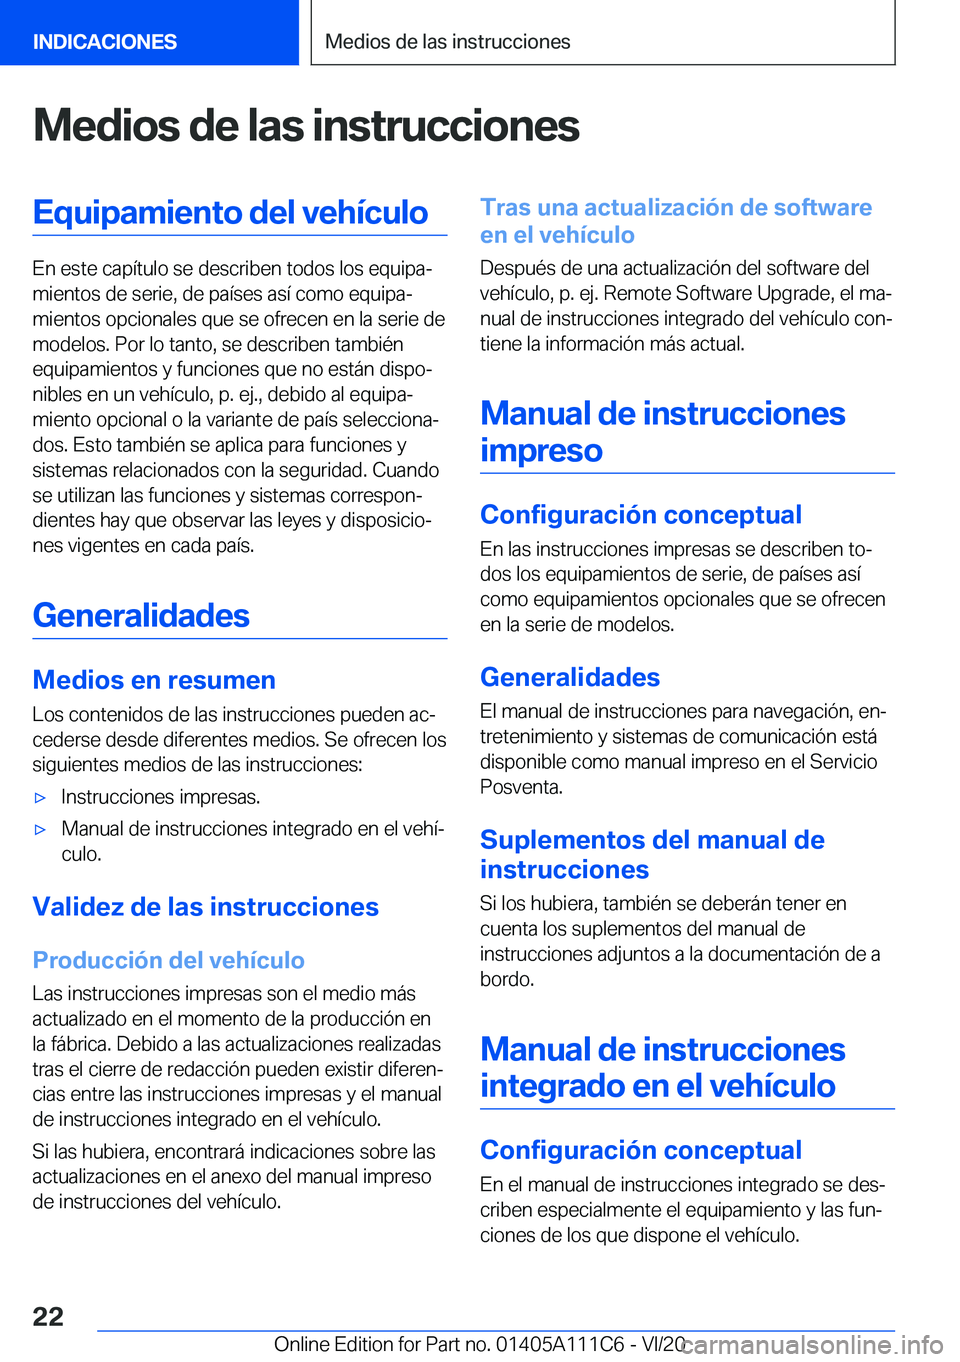 BMW 3 SERIES SEDAN PLUG-IN HYBRID 2021  Manuales de Empleo (in Spanish) �M�e�d�i�o�s��d�e��l�a�s��i�n�s�t�r�u�c�c�i�o�n�e�s�E�q�u�i�p�a�m�i�e�n�t�o��d�e�l��v�e�h�